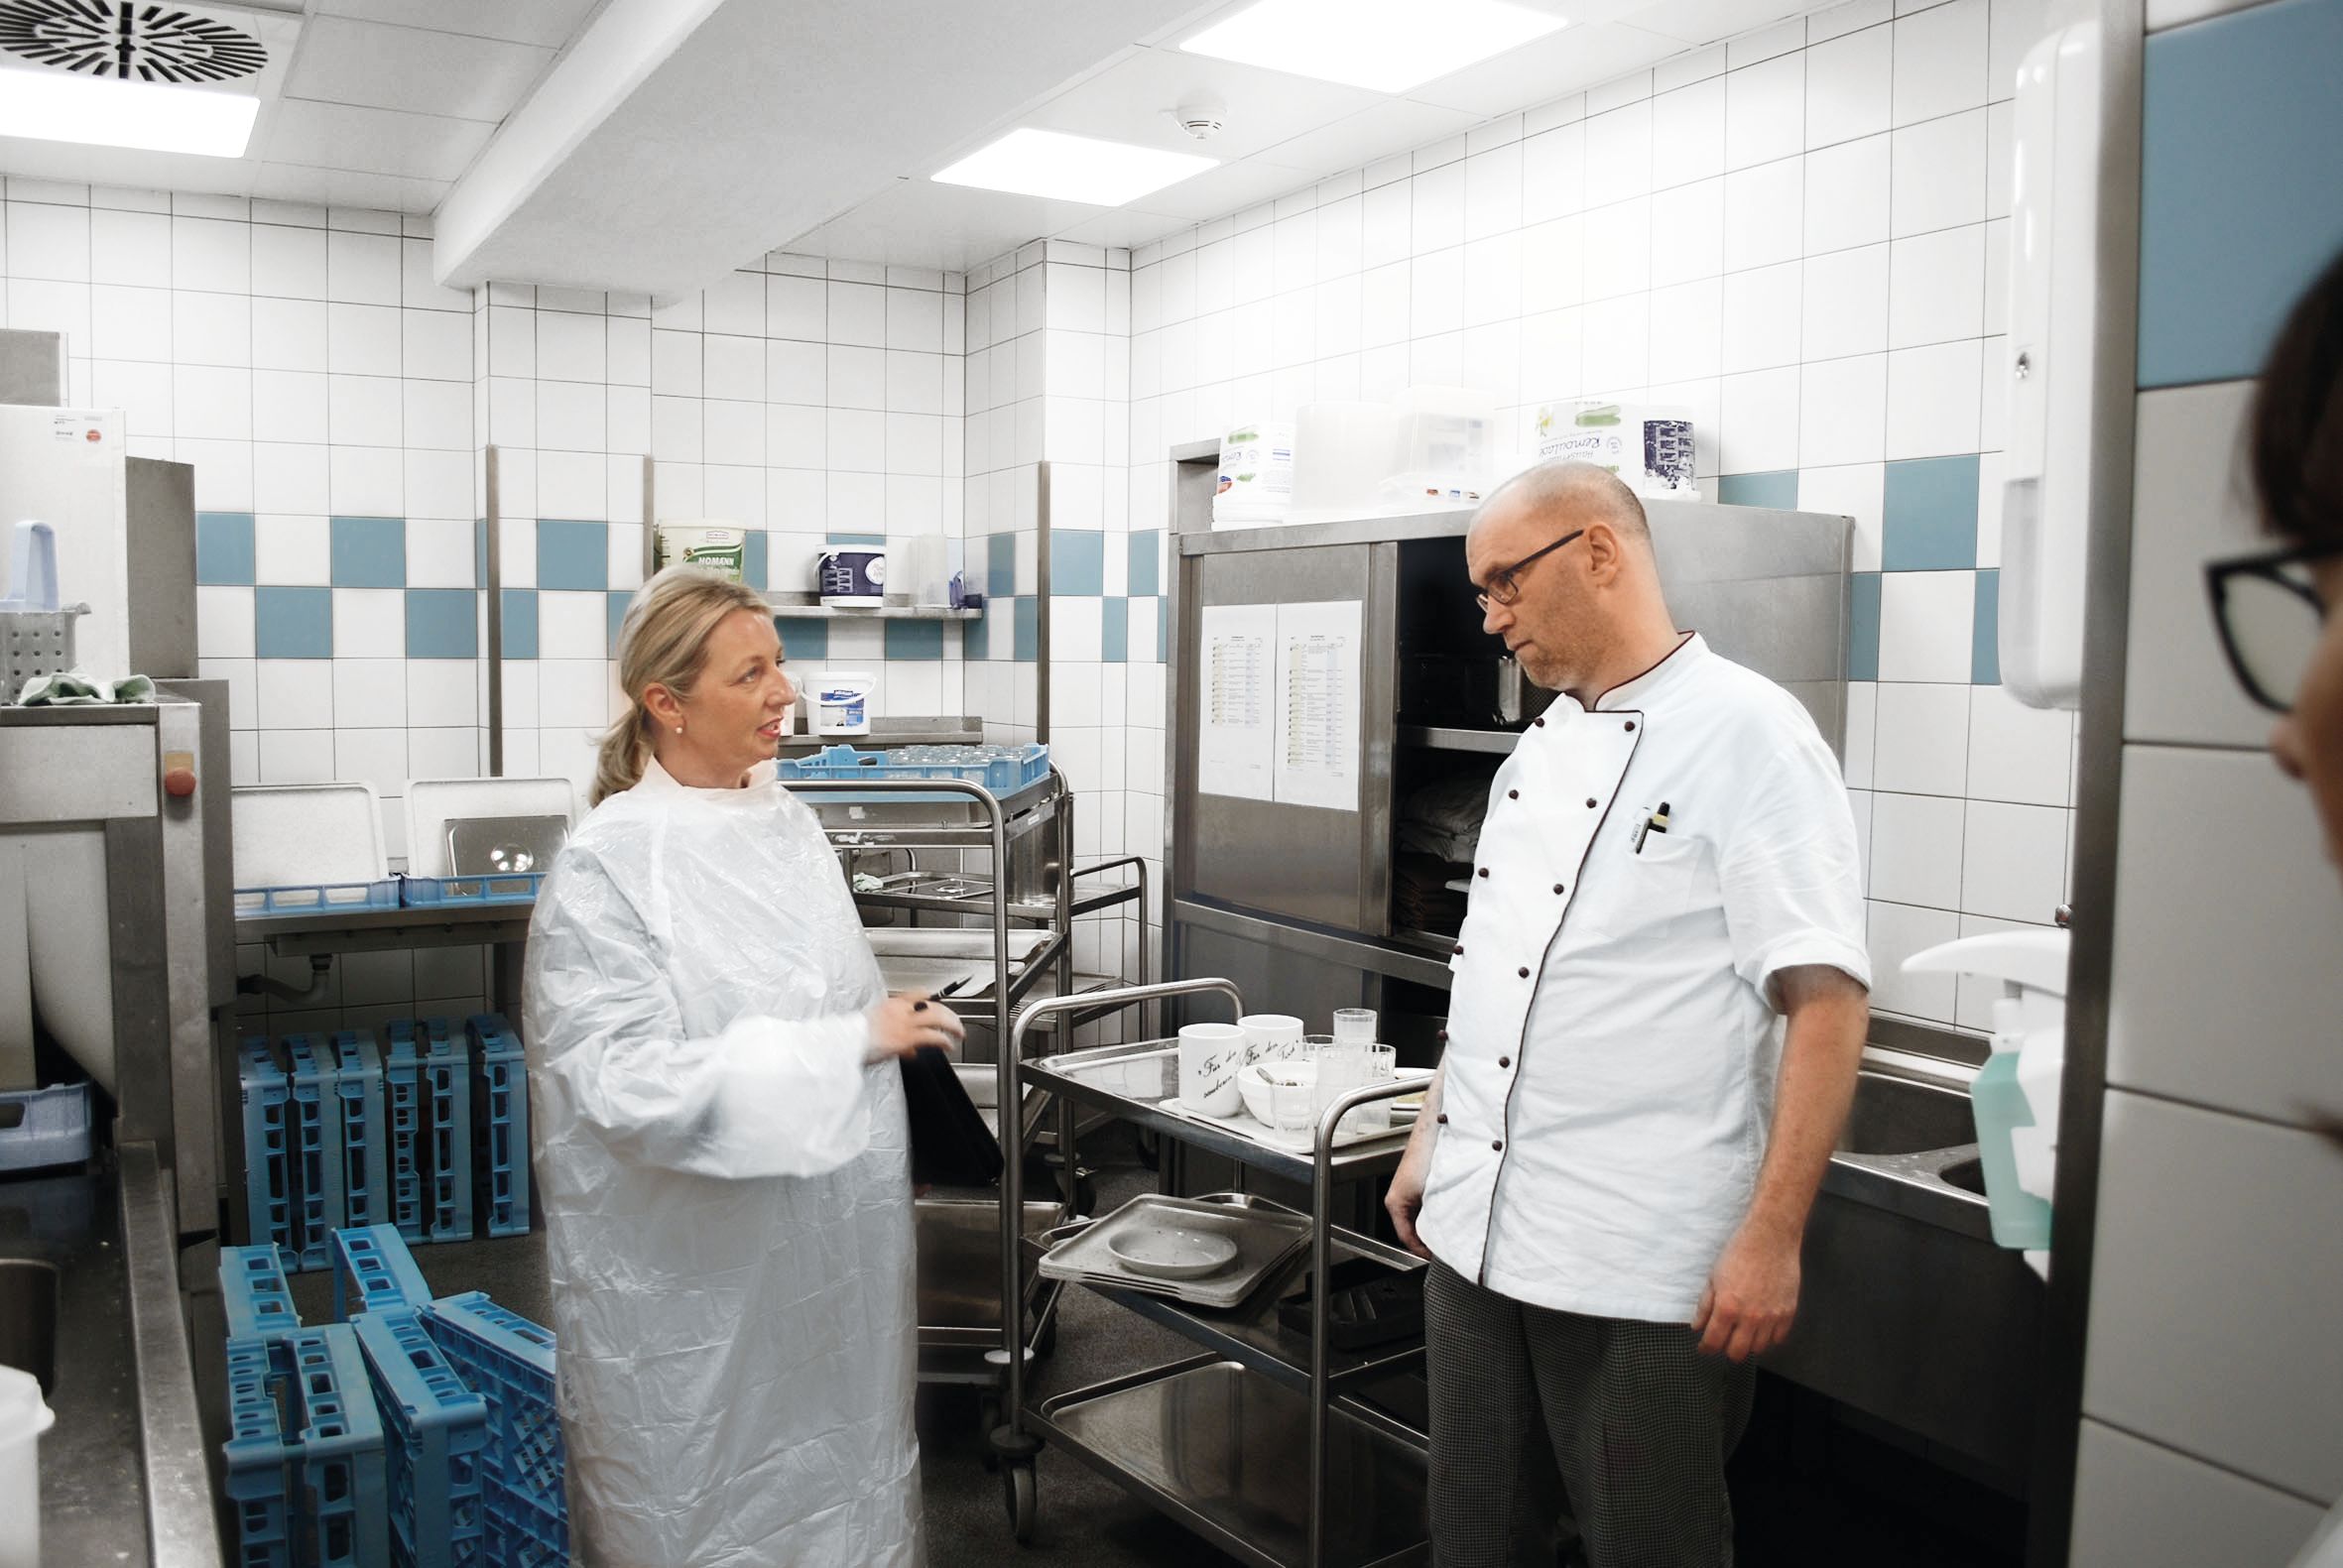 Ruth Giersch spricht mit einem Küchenmitarbeiter neben einem Servierwagen mit Geschirr - sie trägt einen Schutzkittel, er eine Kochjacke.